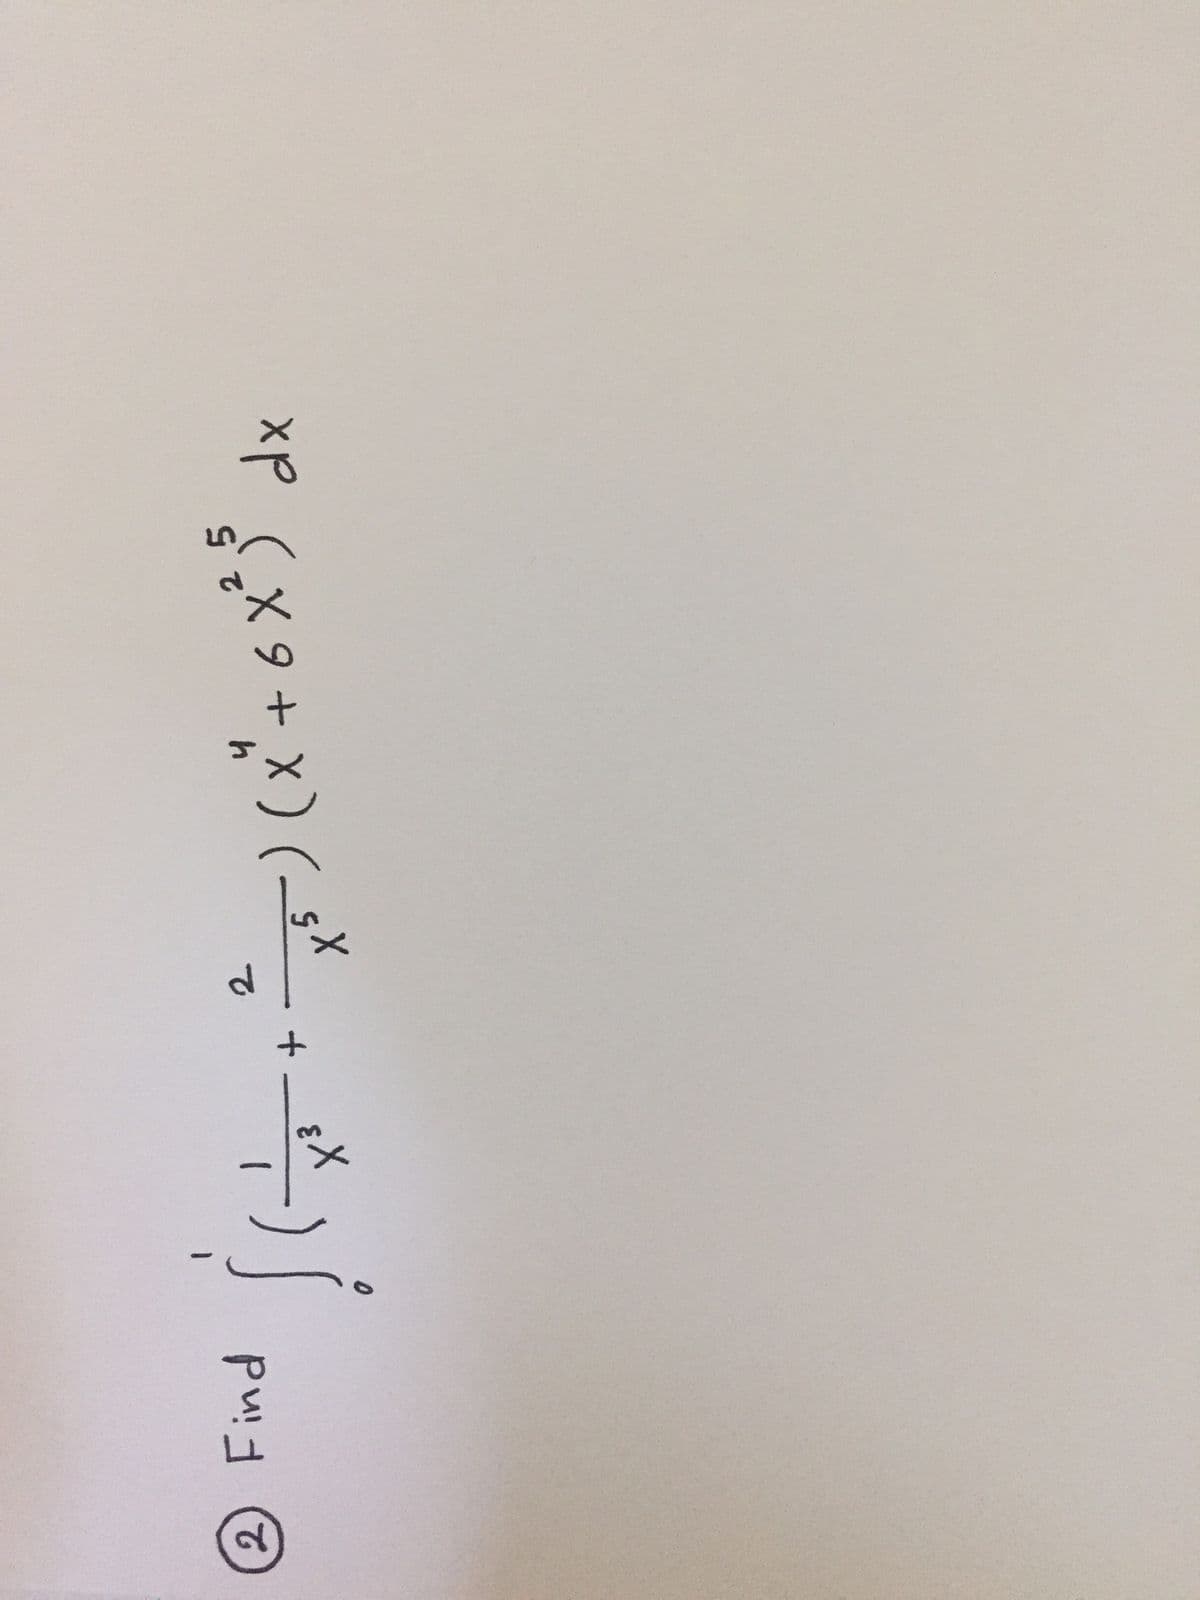 2 Find
2.
xp Cx9 + x)(-5^
